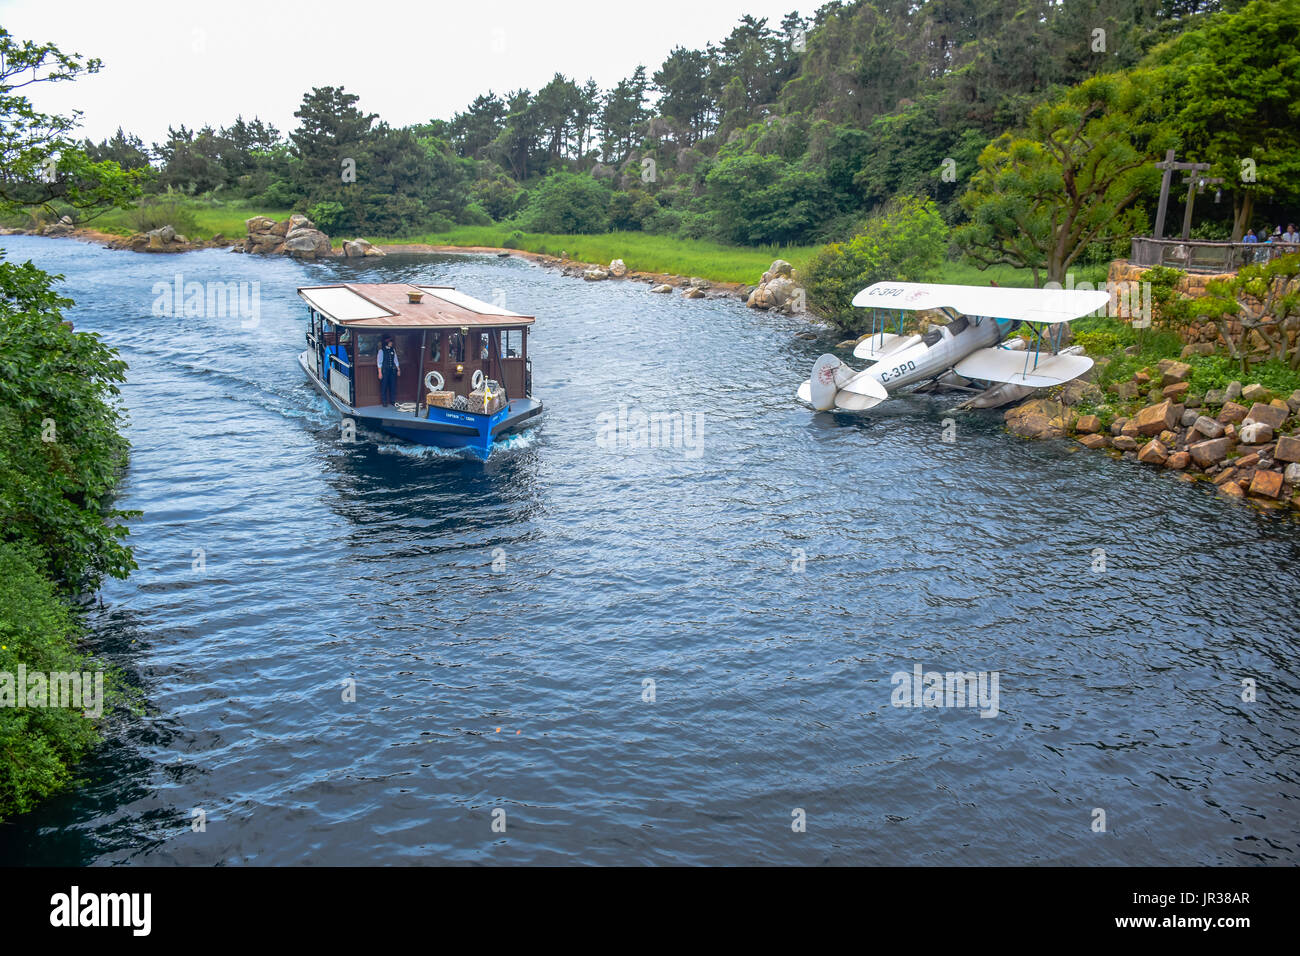 CHIBA, Japón: Un barco lleno de pasajeros está atravesando el río en medio de la selva en Tokio Disneysea Foto de stock